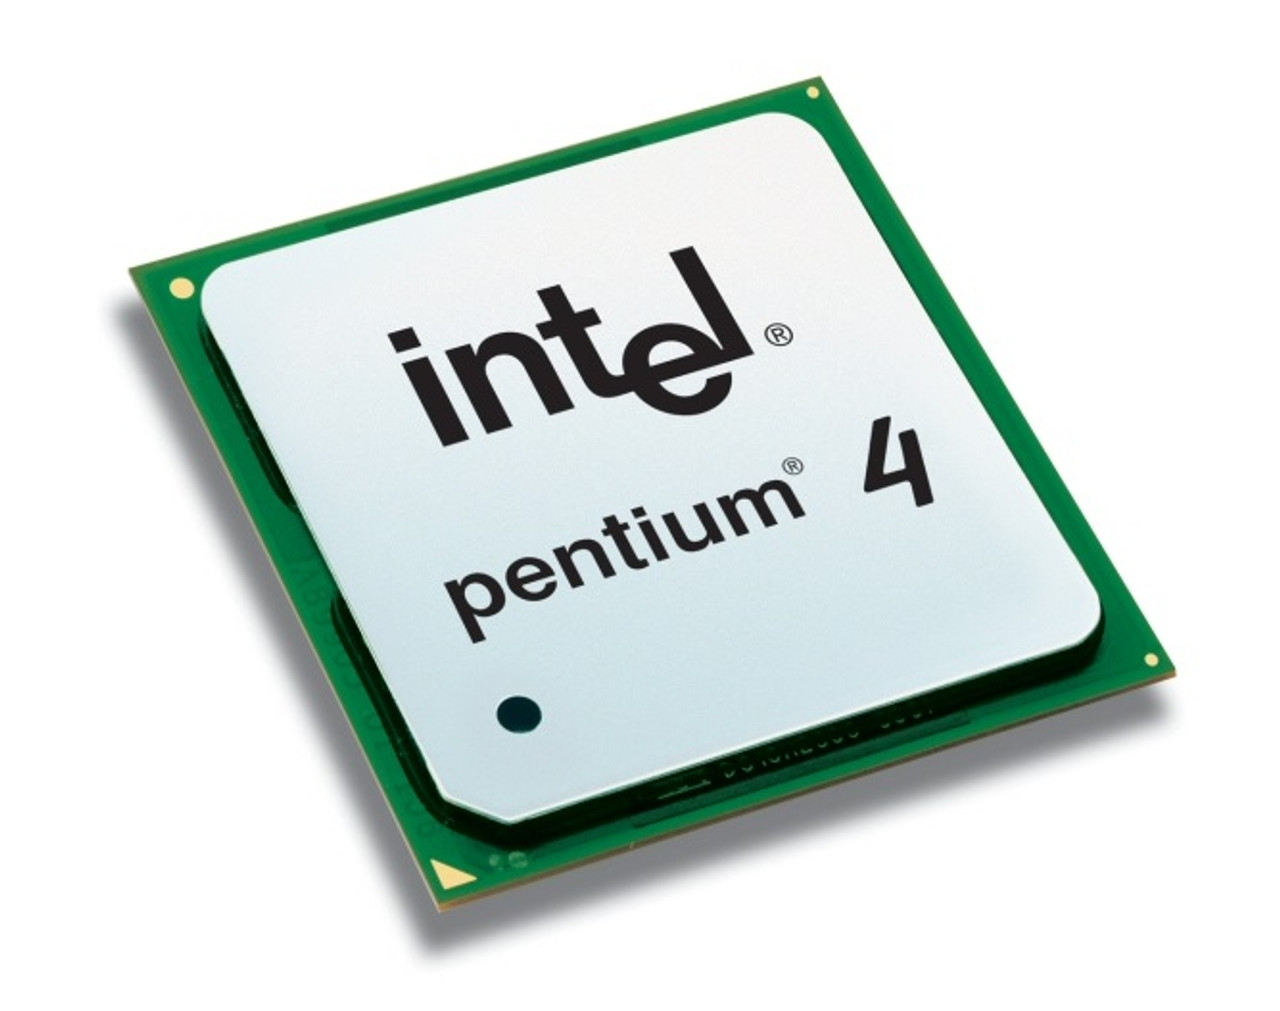 570J - Intel Pentium 4 570J 3.8GHz 800MHz FSB 1MB L2 Cache Processor